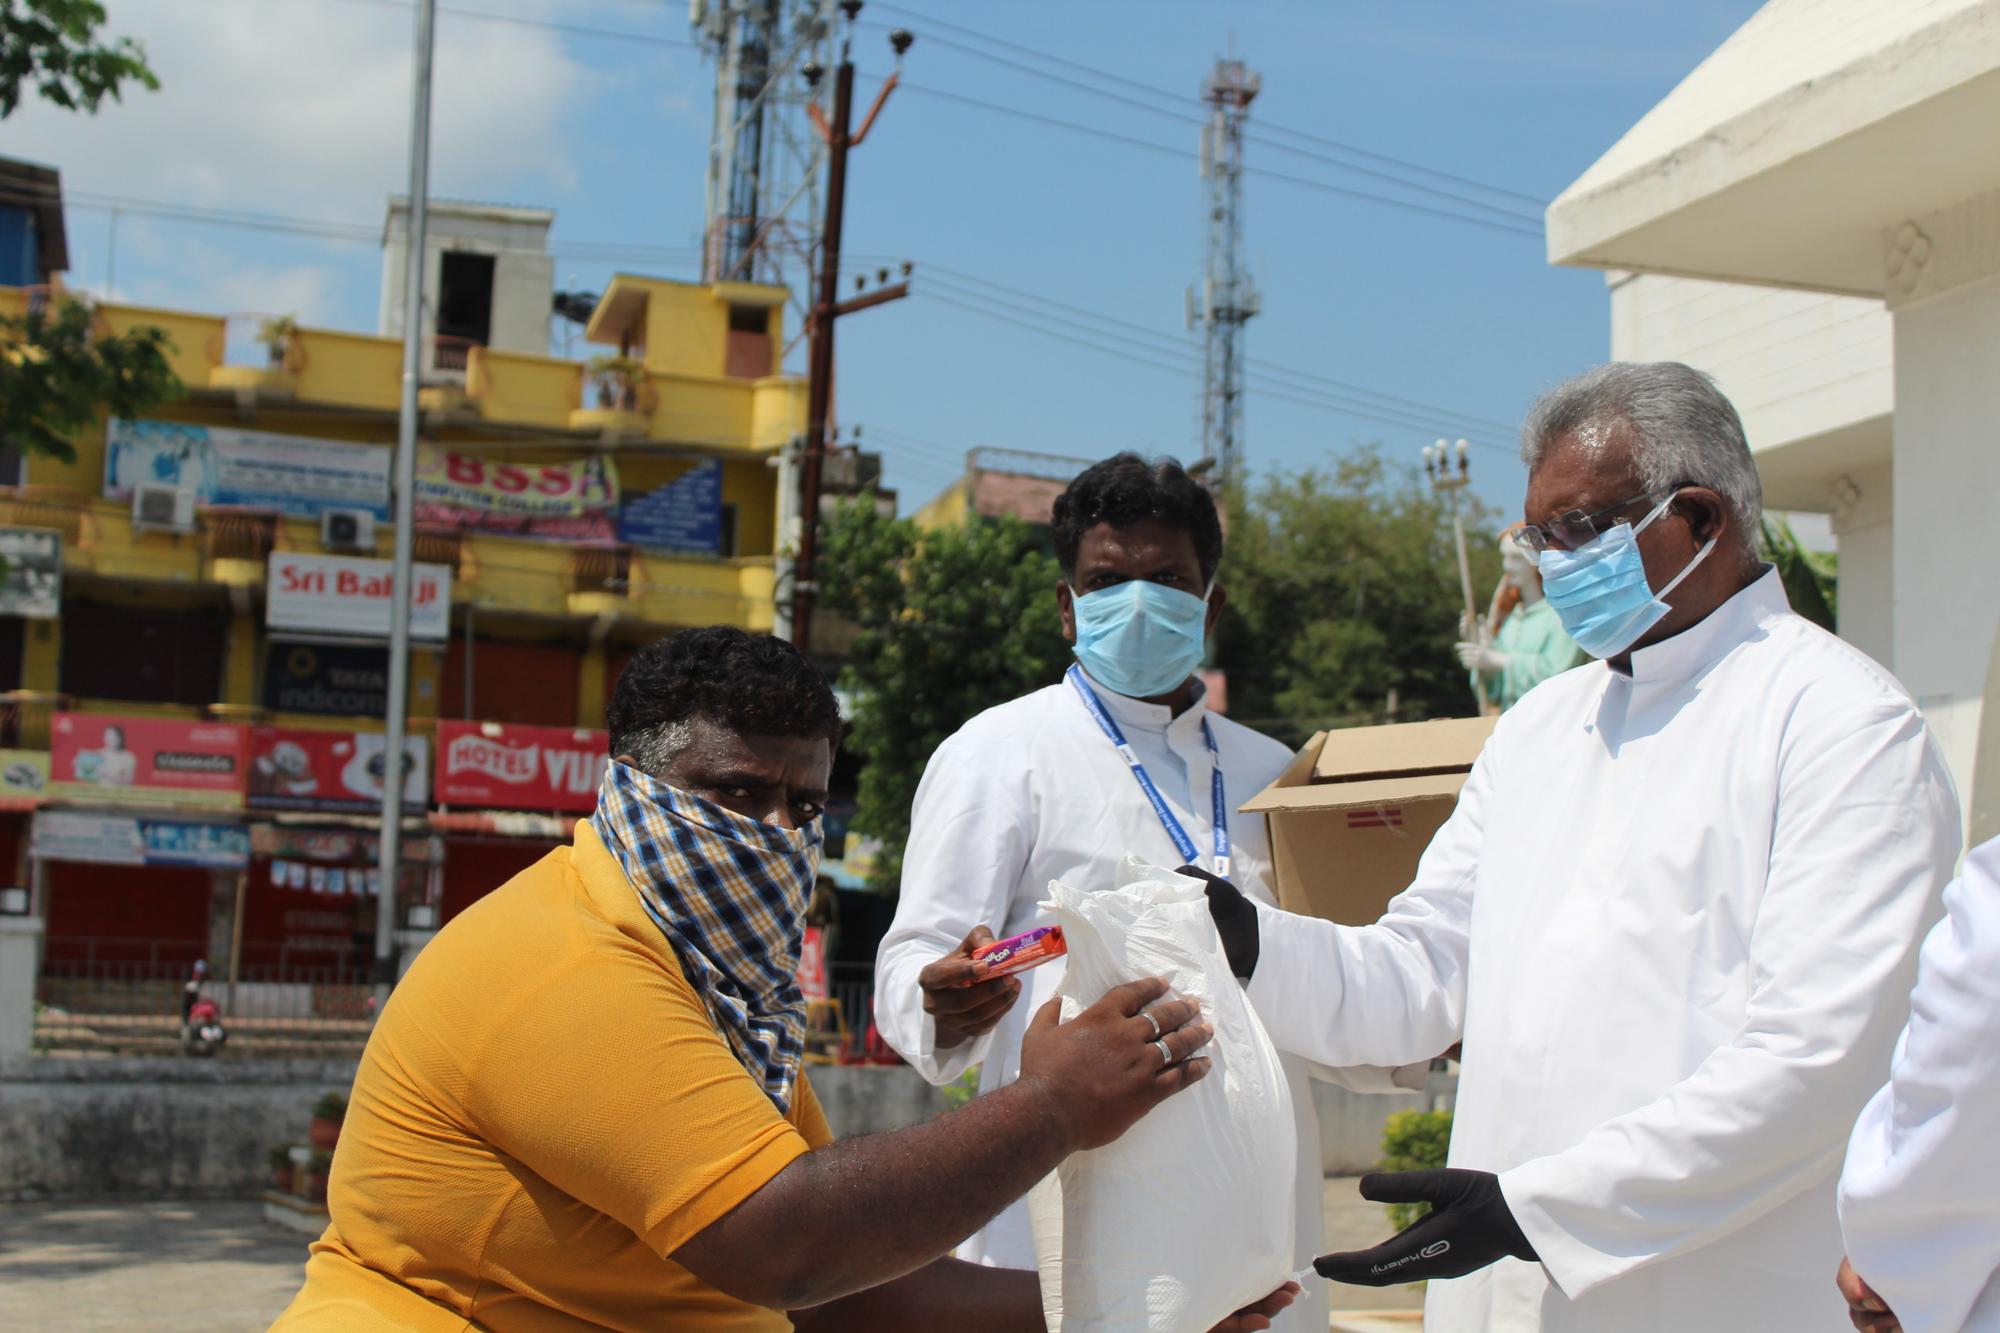  Ser un ‘intocable’ en la India, aún peor durante una pandemia  - 1